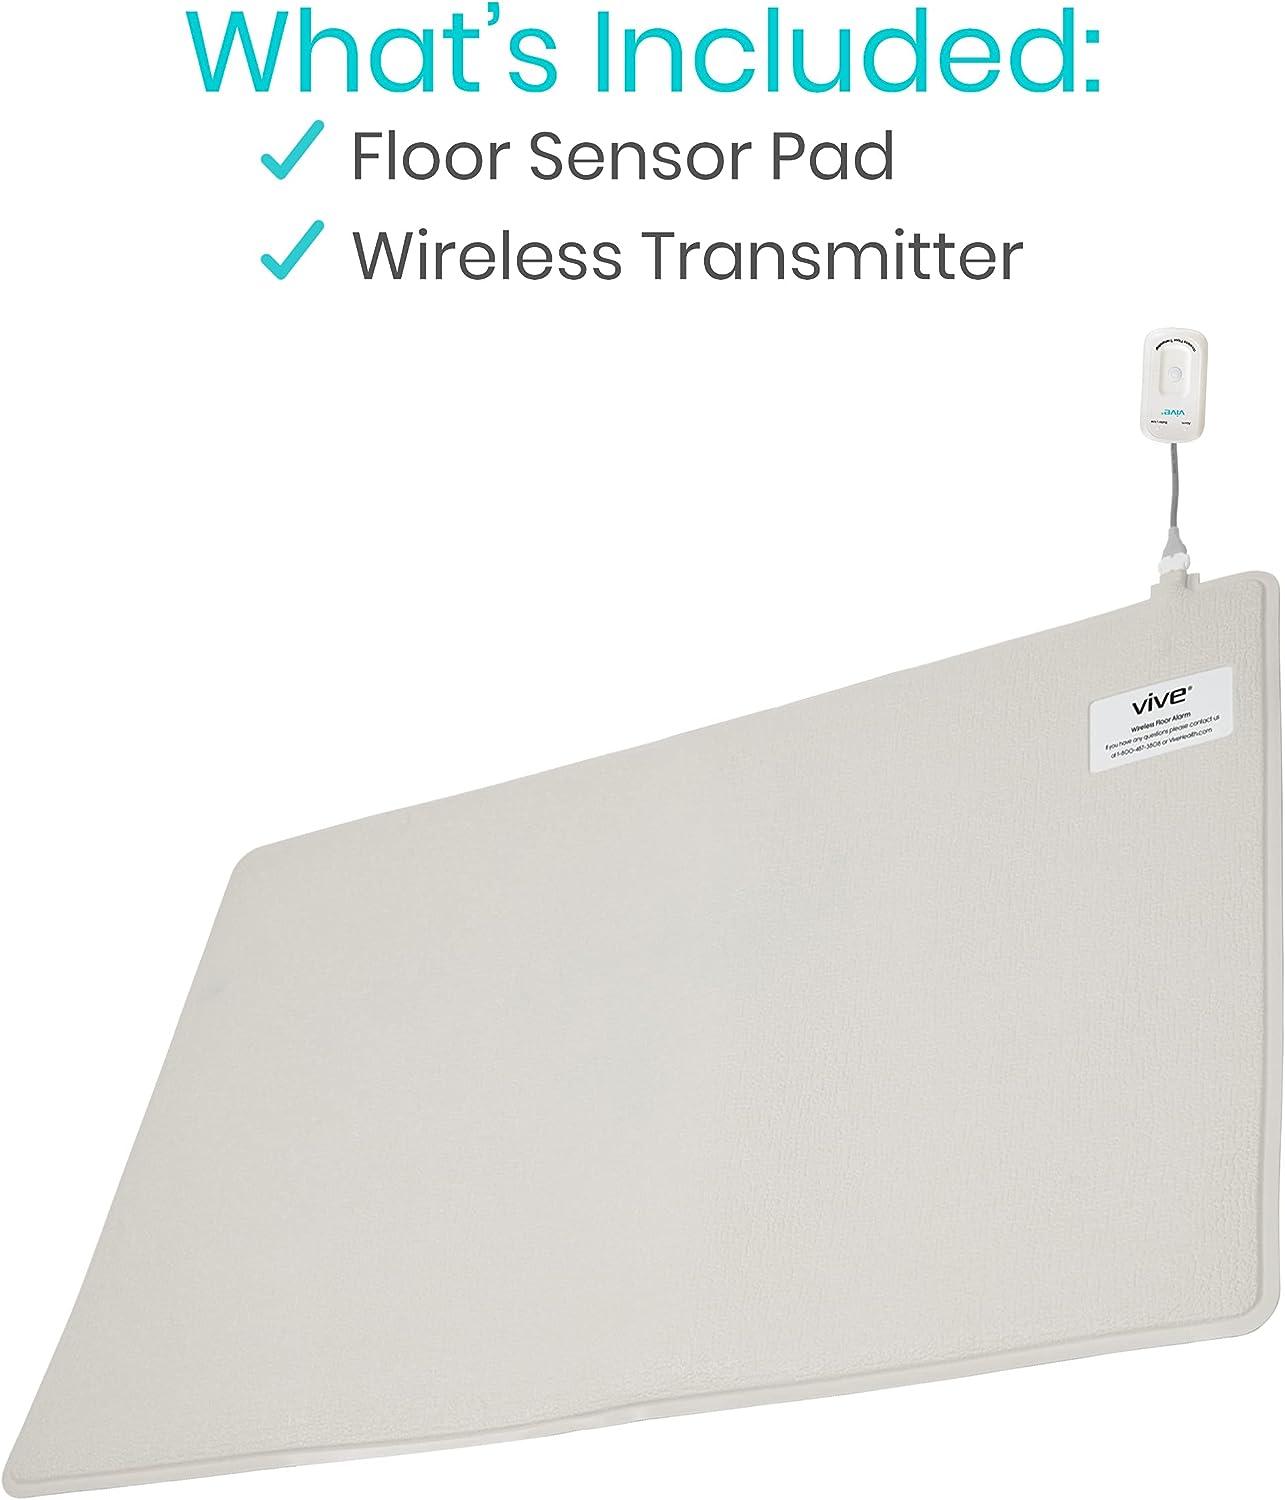 Floor Sensor/Pressure Mat for Dementia